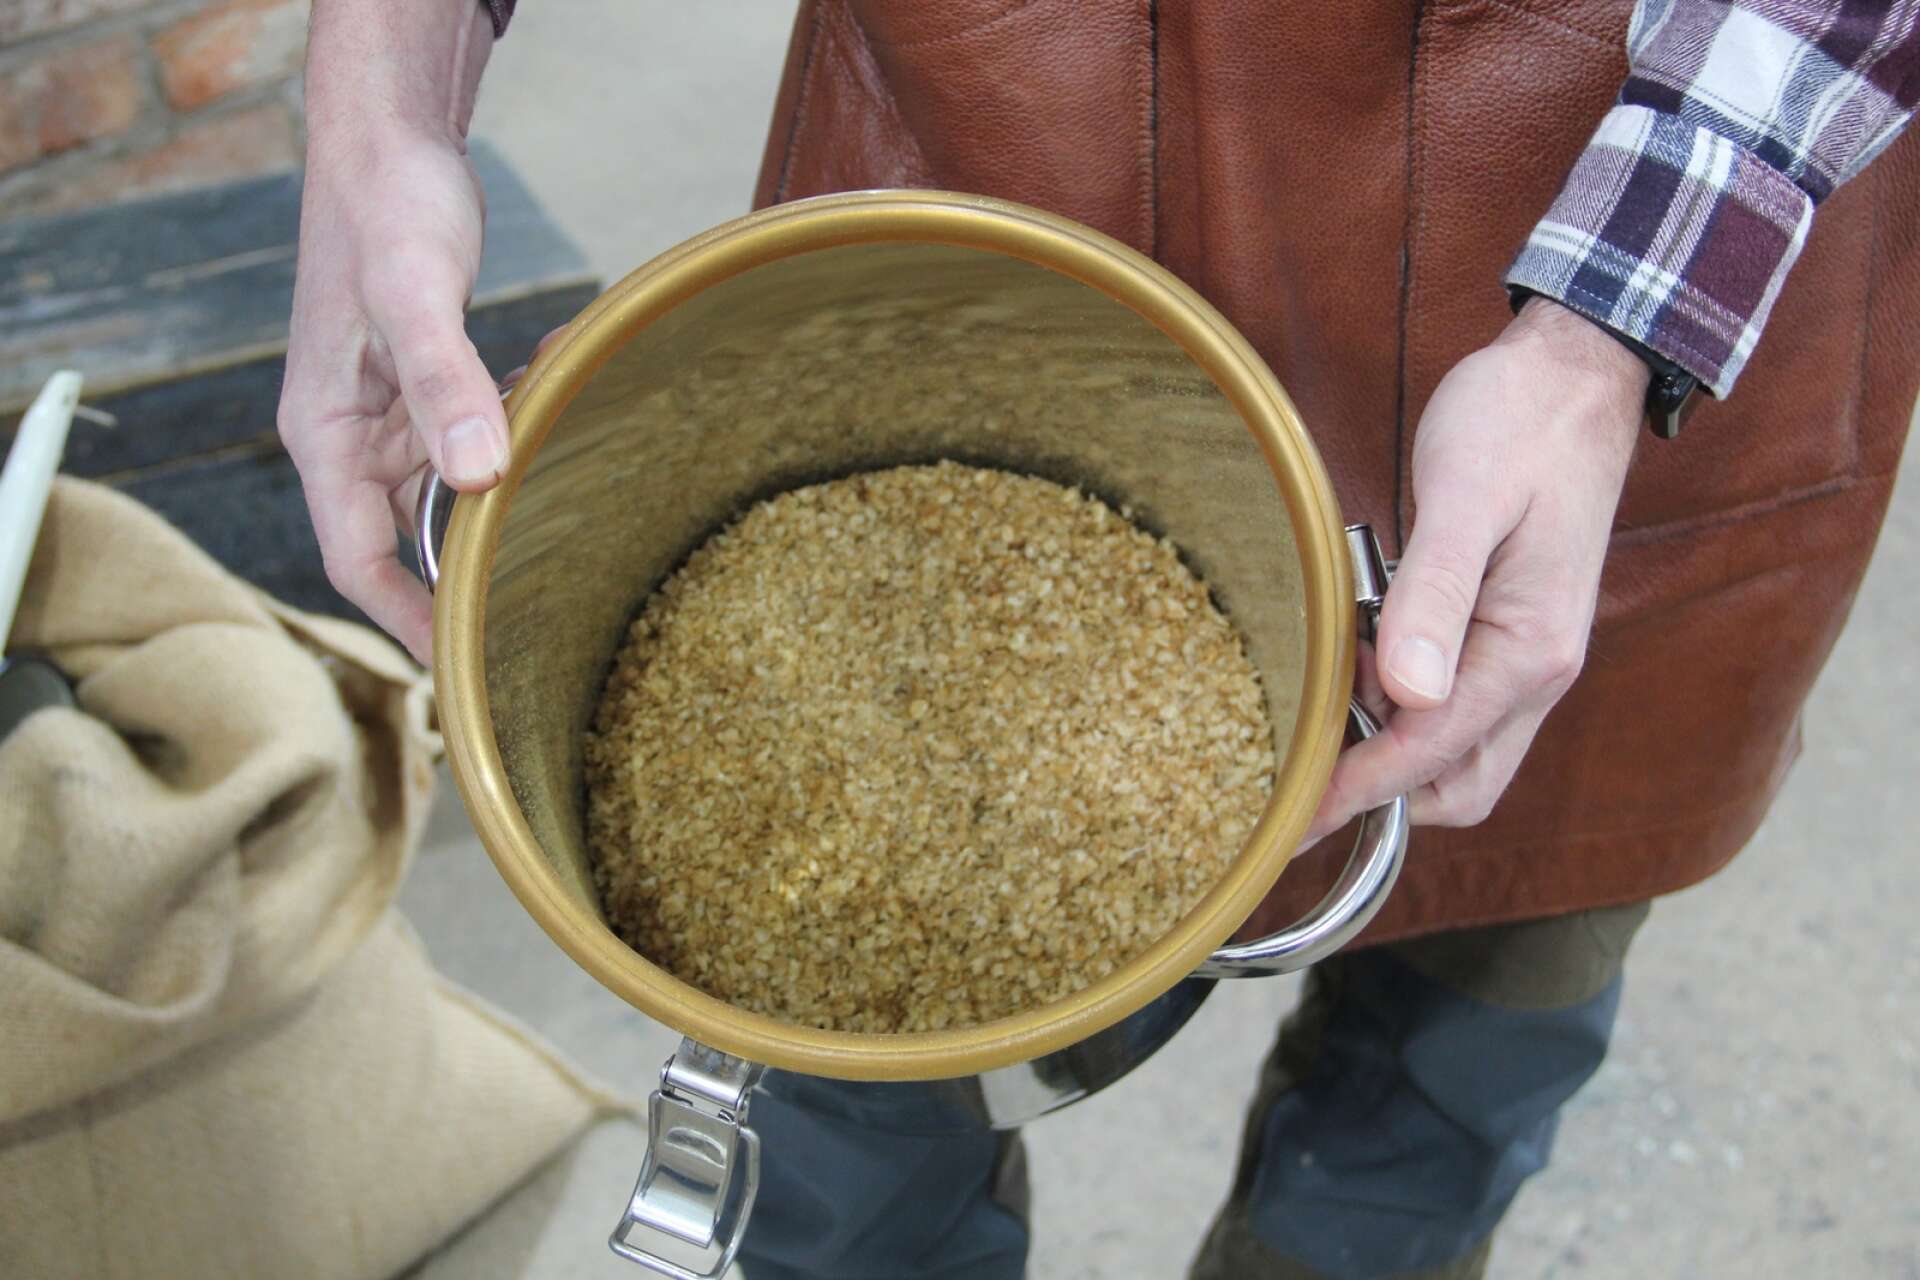 När kaffet rostas lossnar skalbitar från bönan. Anders Nilsson planerar att använda det vid tillverkningen av ölsorten stout.